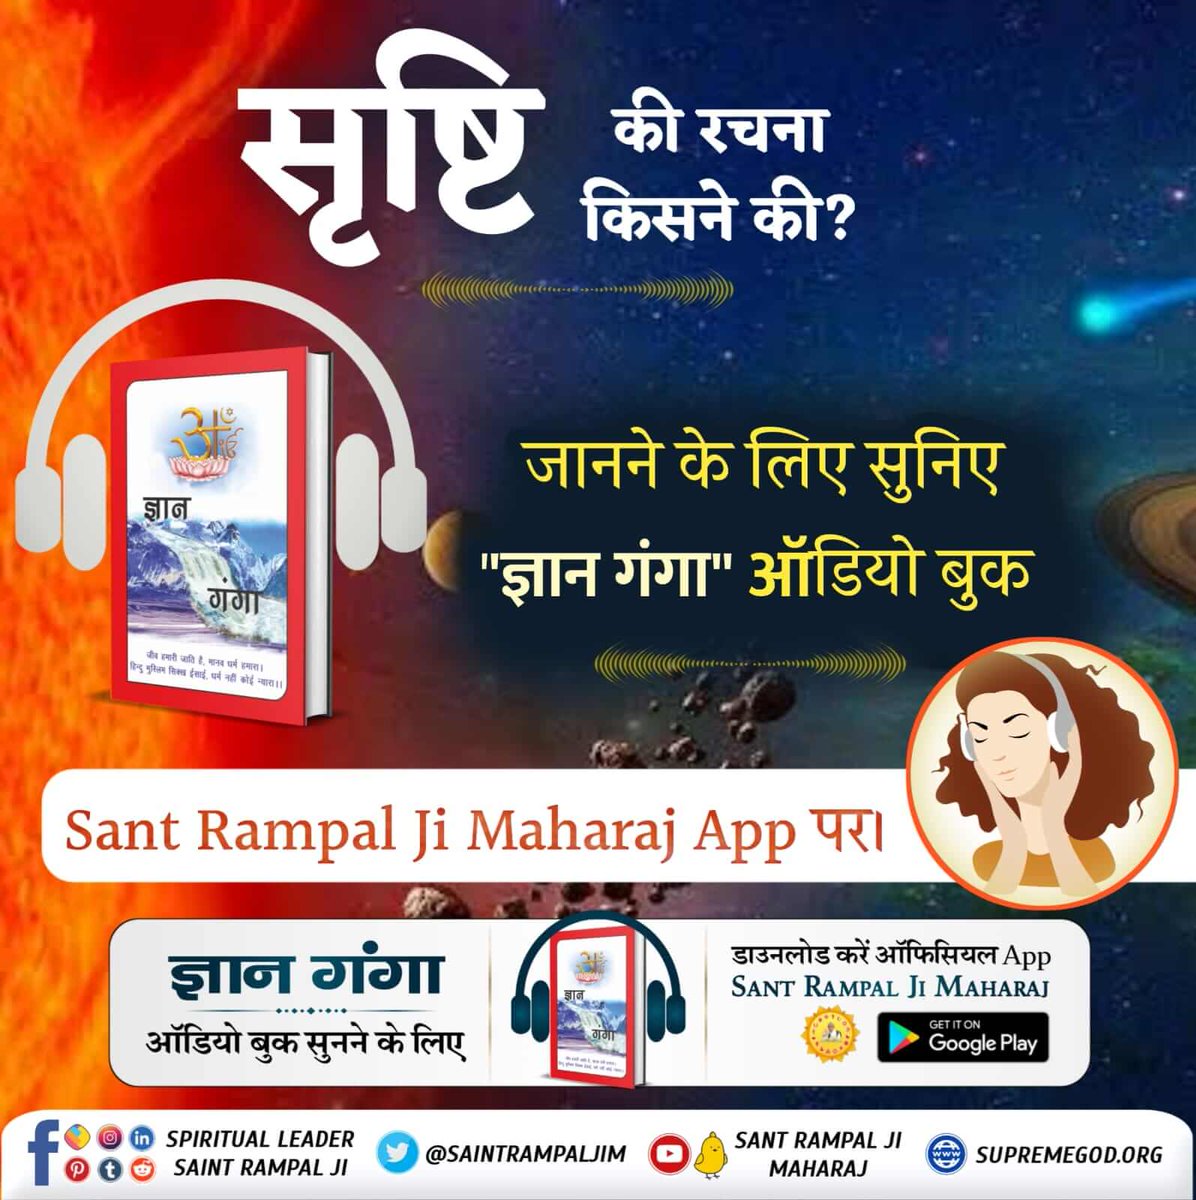 #GyanGanga_AudioBook ब्रह्मा, विष्णु, महेश की उत्पत्ति कैसे हुई? जानने के लिए अवश्य सुनिए ज्ञान गंगा ऑडियो बुक। आप इस ऑडियो बुक को 'Sant Rampal Ji Maharaj' YouTube channel पर सुन सकते हैं। Audio Book 'Sant Rampal Ji Maharaj' App पर भी उपलब्ध है।